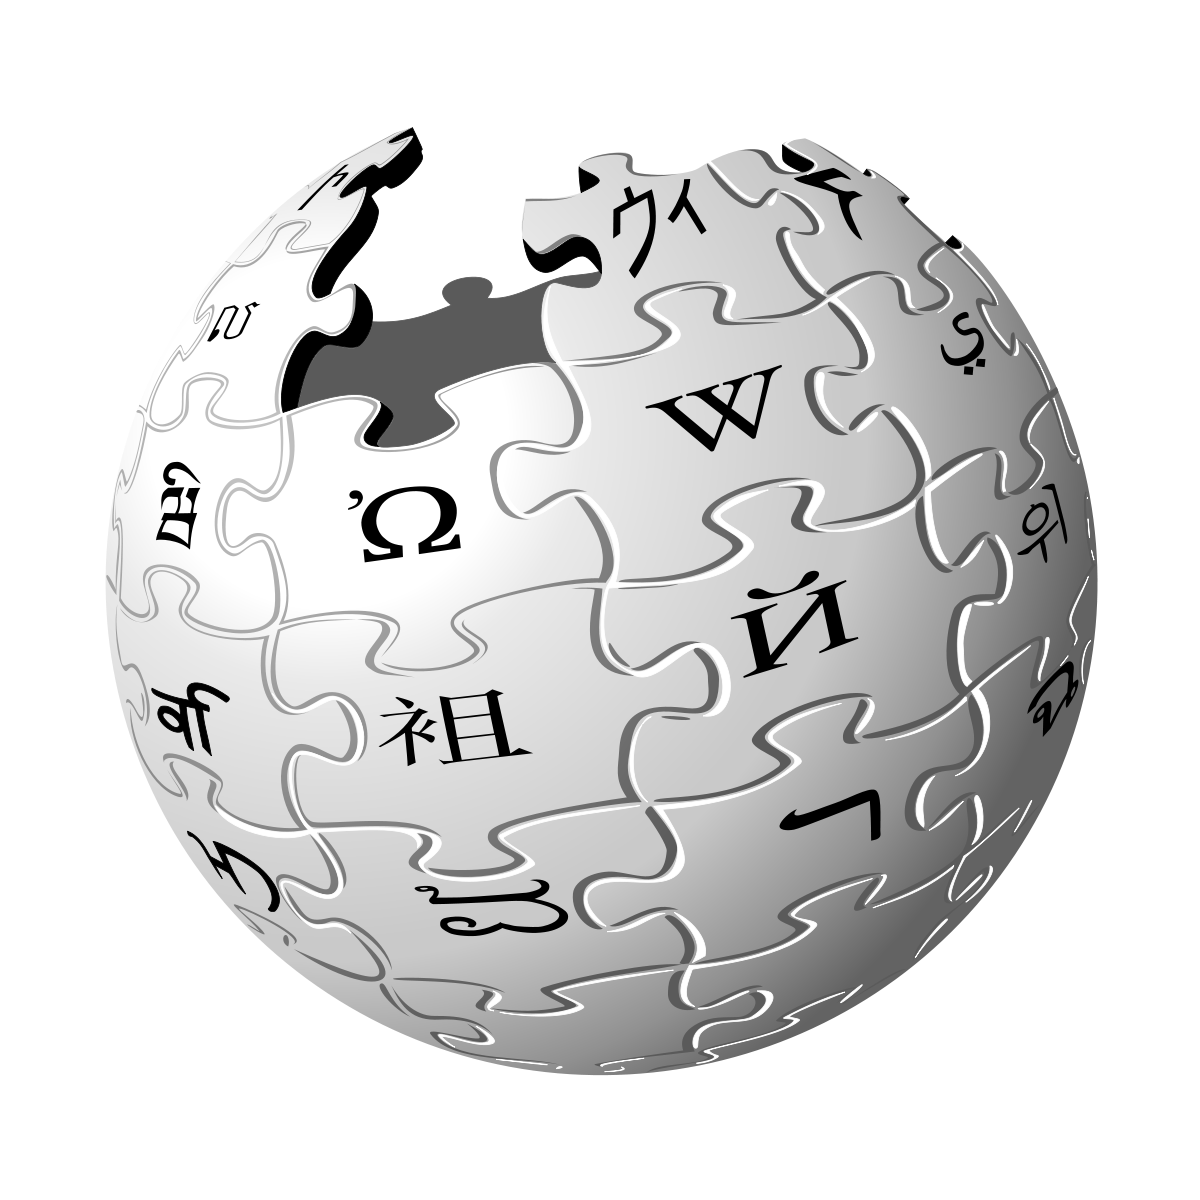 File:BFDI LogoHQ.png - Wikipedia